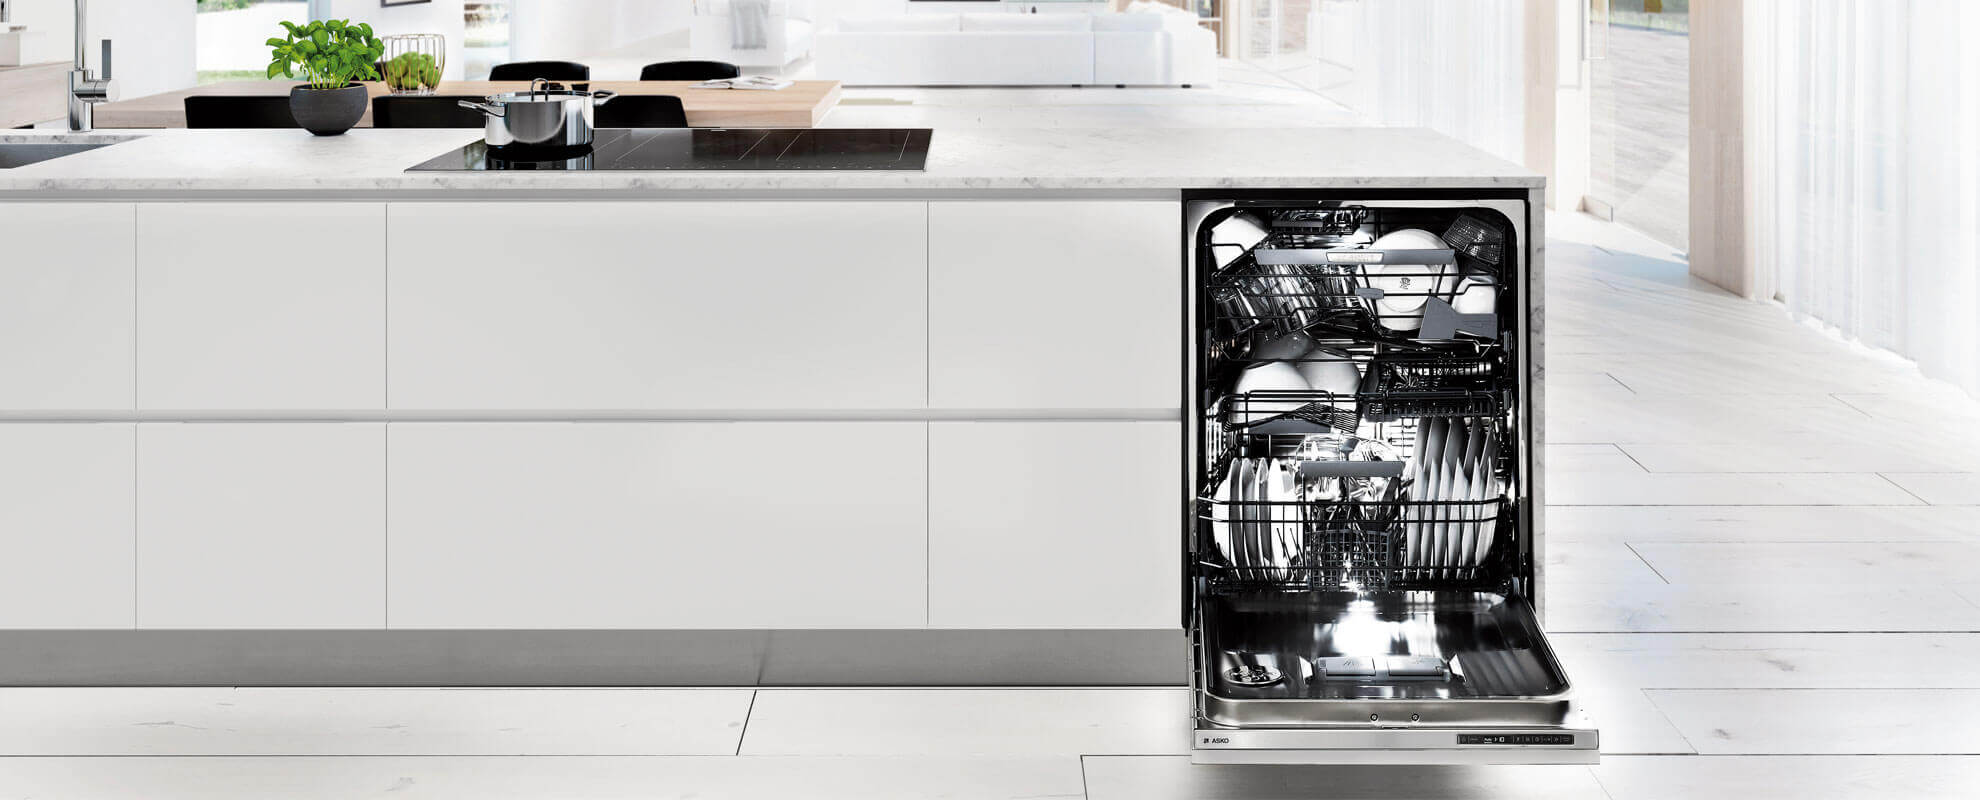 Risultati immagini per dishwasher kitchen